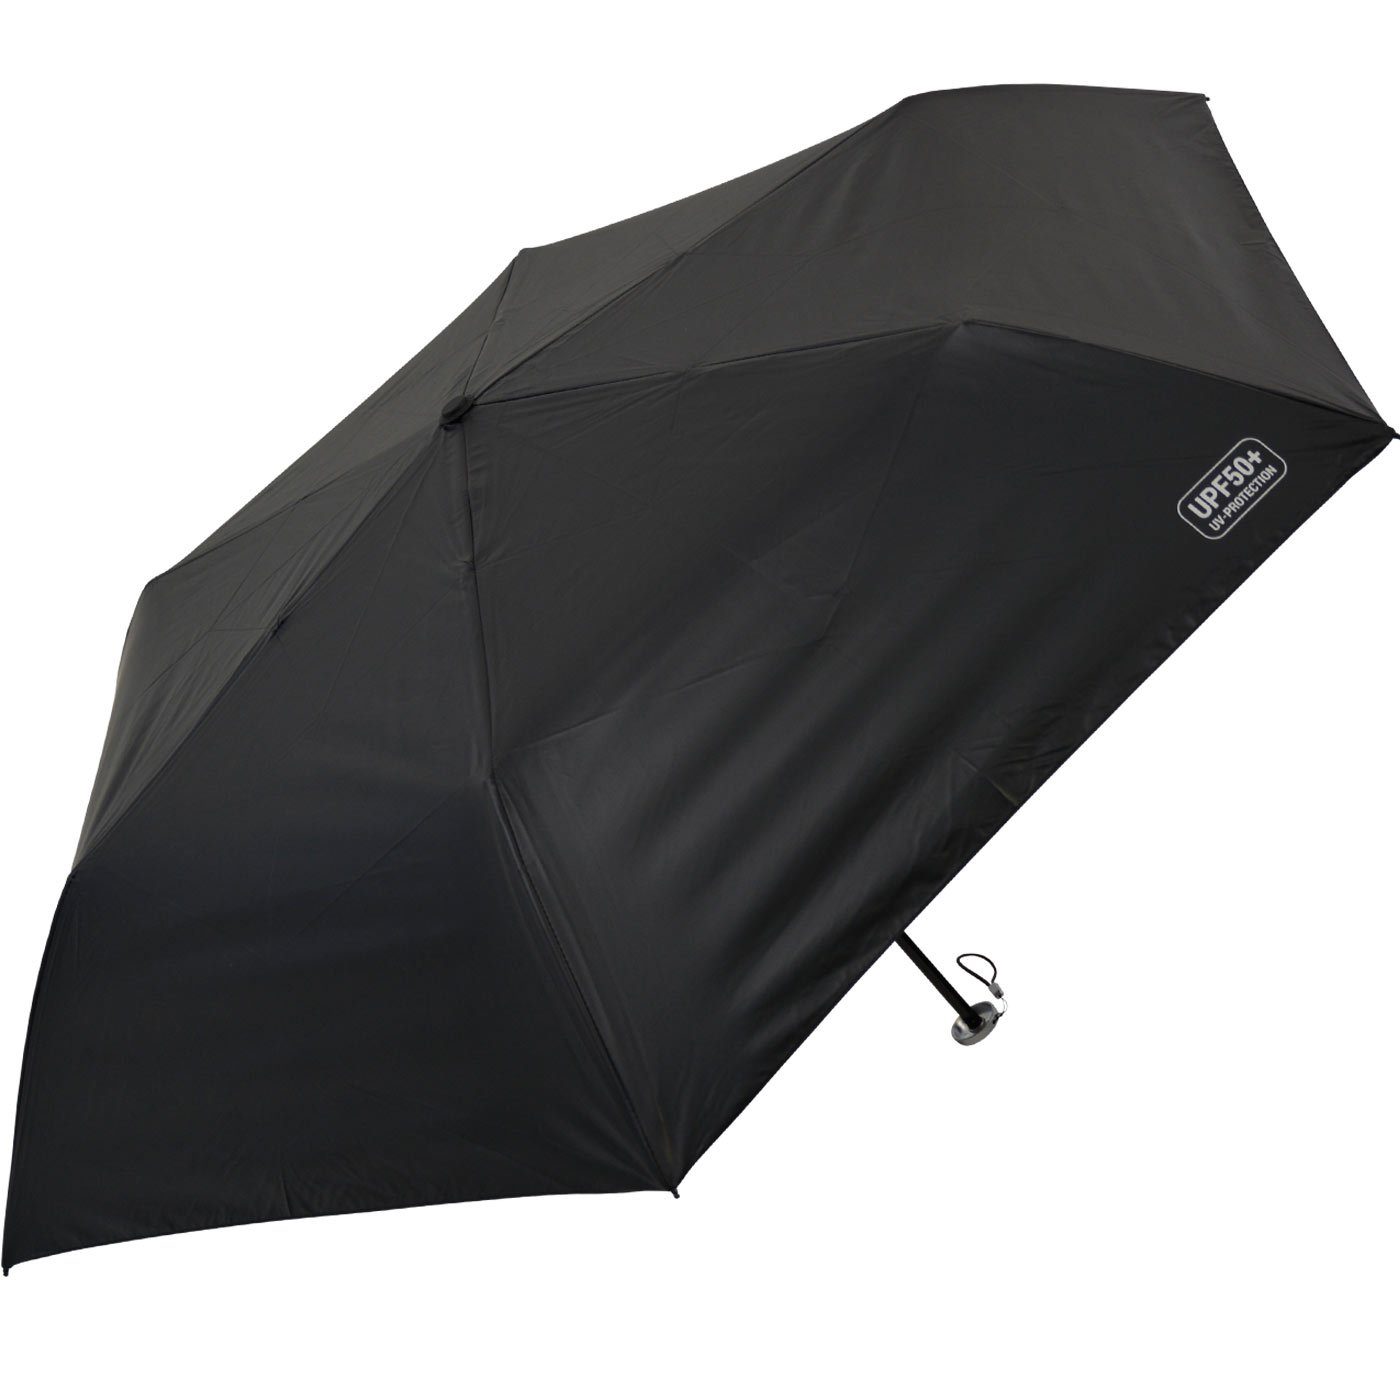 Schirm, lichtundurchlässiges Supermini bedruckt, Impliva UPF50+ bedruckt - von miniMAX® UV-protection Taschenregenschirm Innen blau Dach, leichter extrem